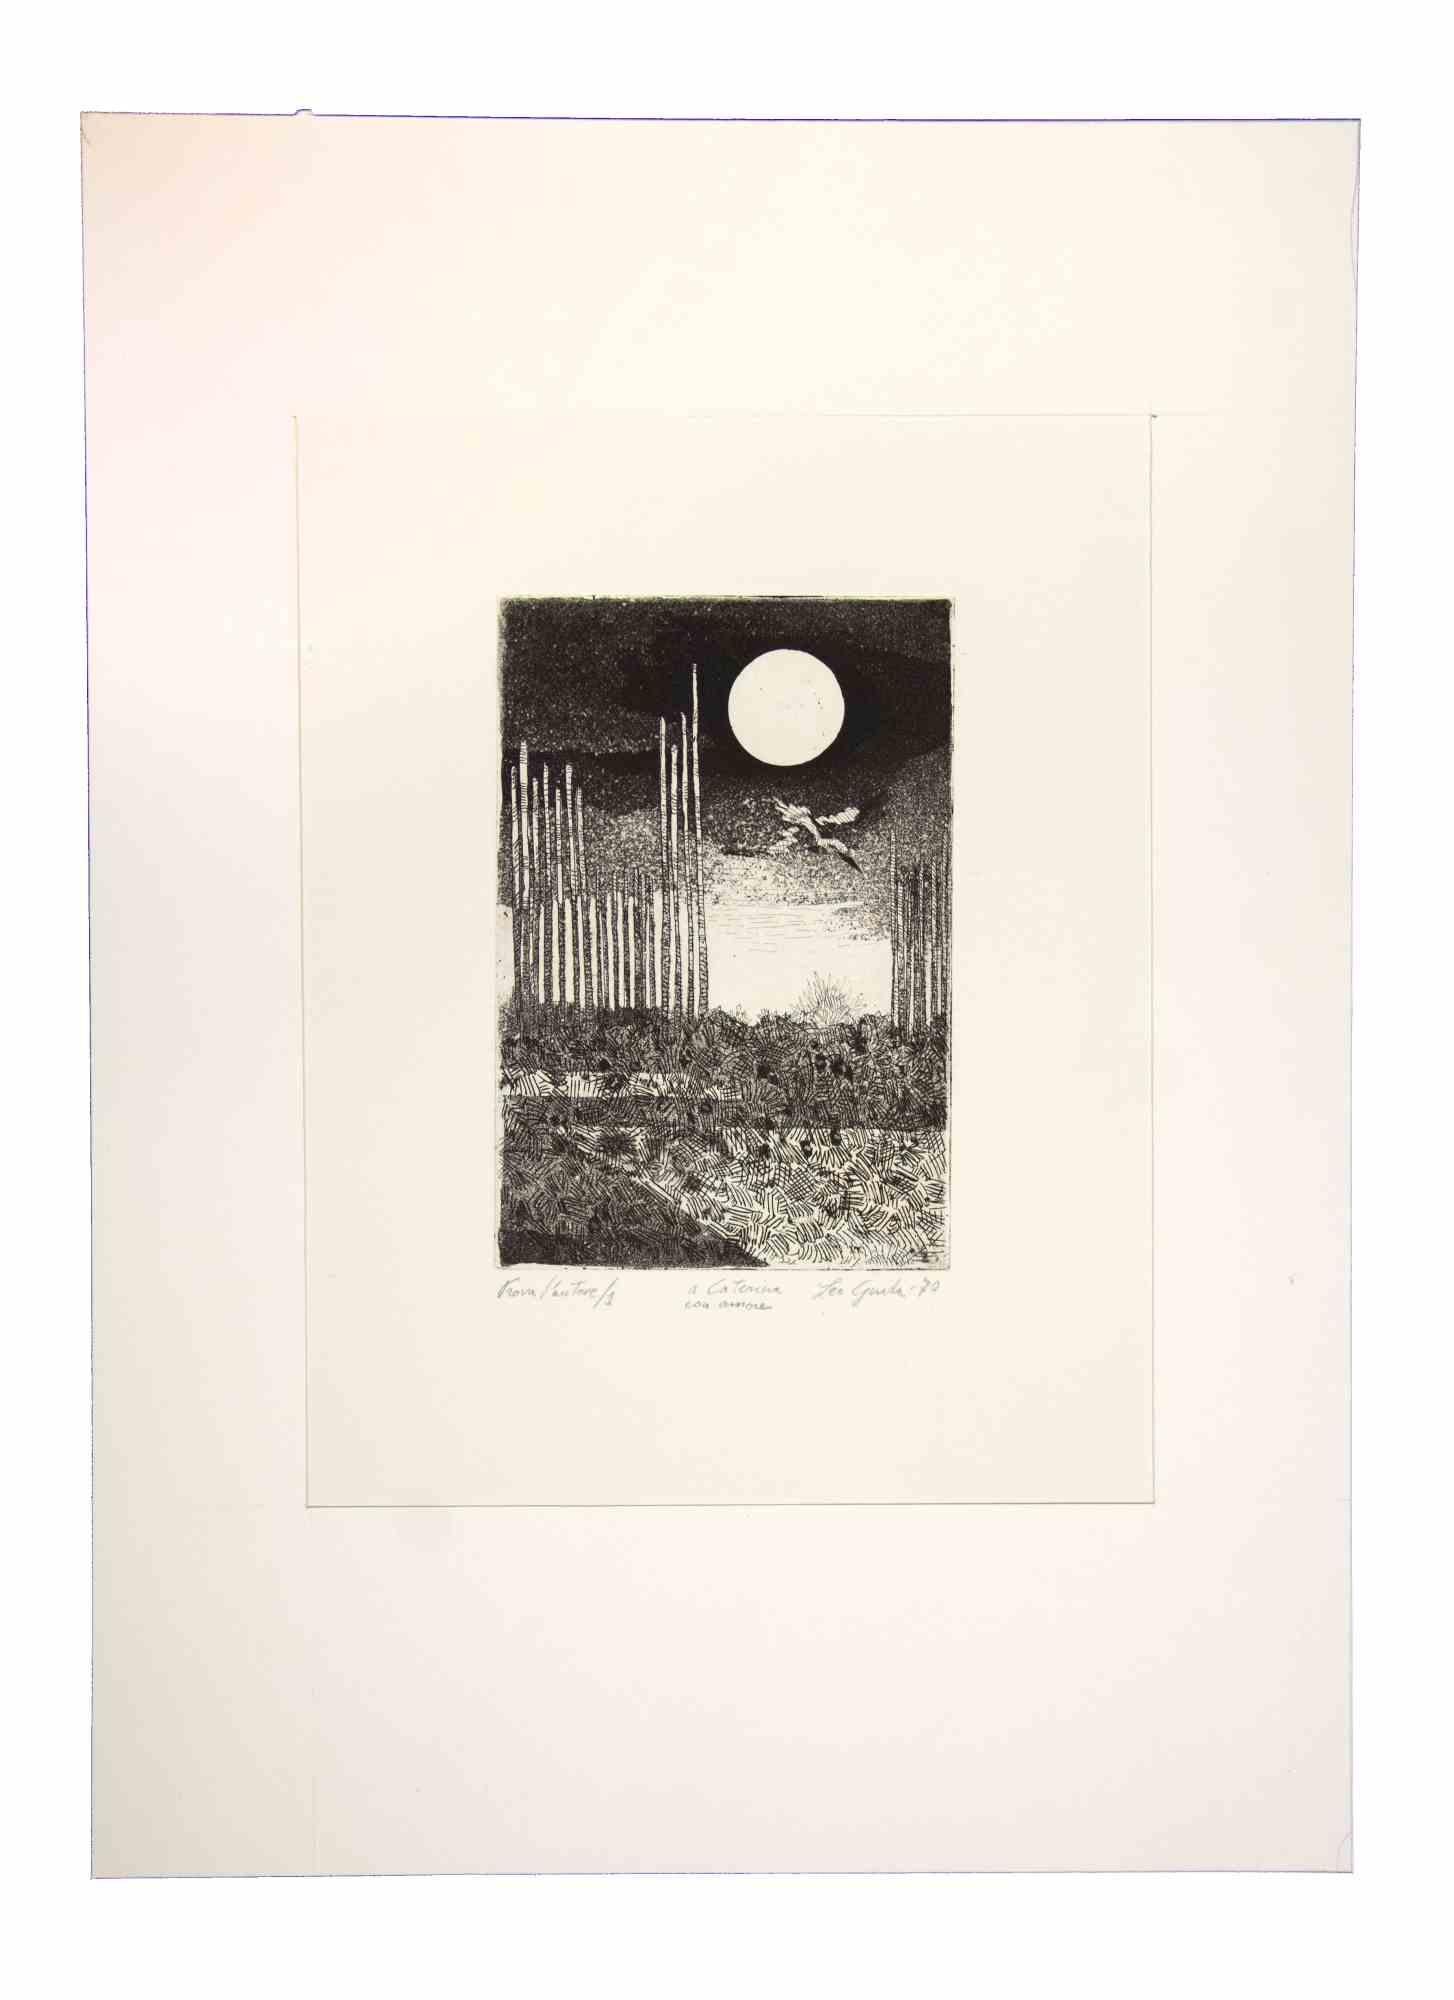 Paysage de nuit est une œuvre d'art originale réalisée  en 1970 par l'artiste contemporain italien  Leo Guida  (1992 - 2017).

Eau-forte et aquatinte sur papier couleur ivoire, avec un carton (39 x 28,5 cm)
 
Signé et daté à la main dans la marge